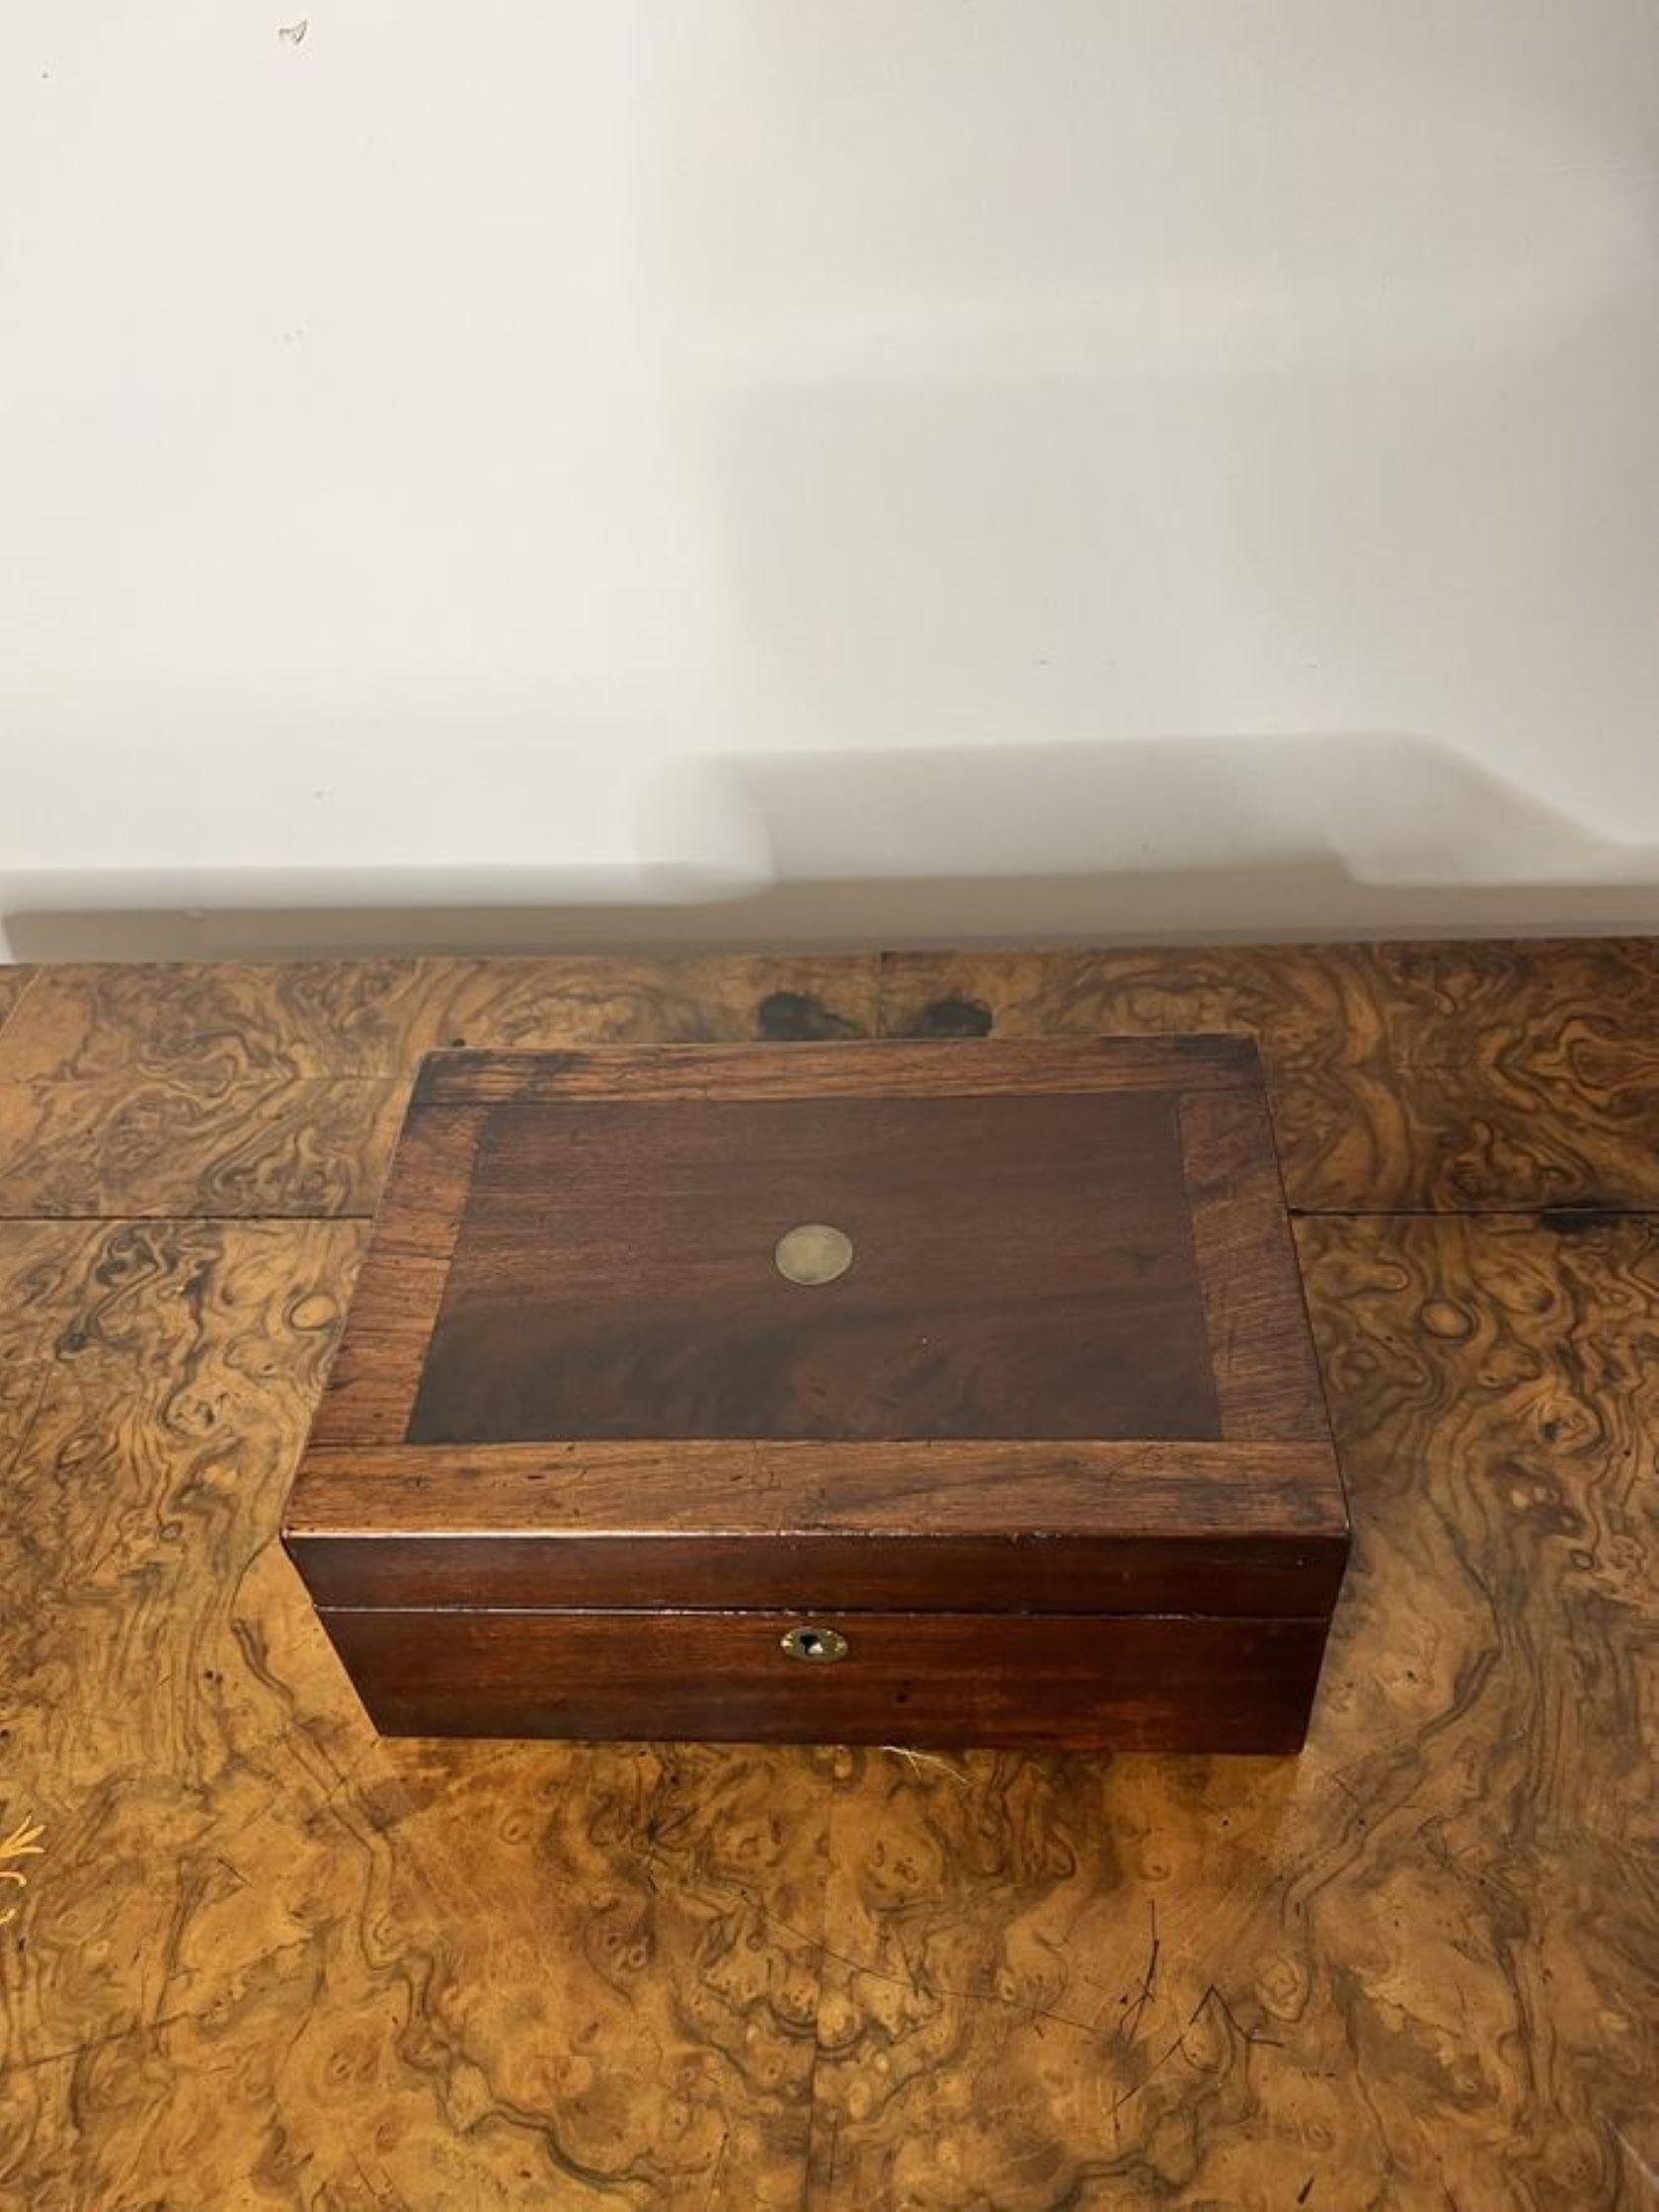 Boîte de rangement victorienne ancienne en acajou ayant une boîte de rangement ancienne de qualité en acajou avec intérieur rouge.

D. 1860